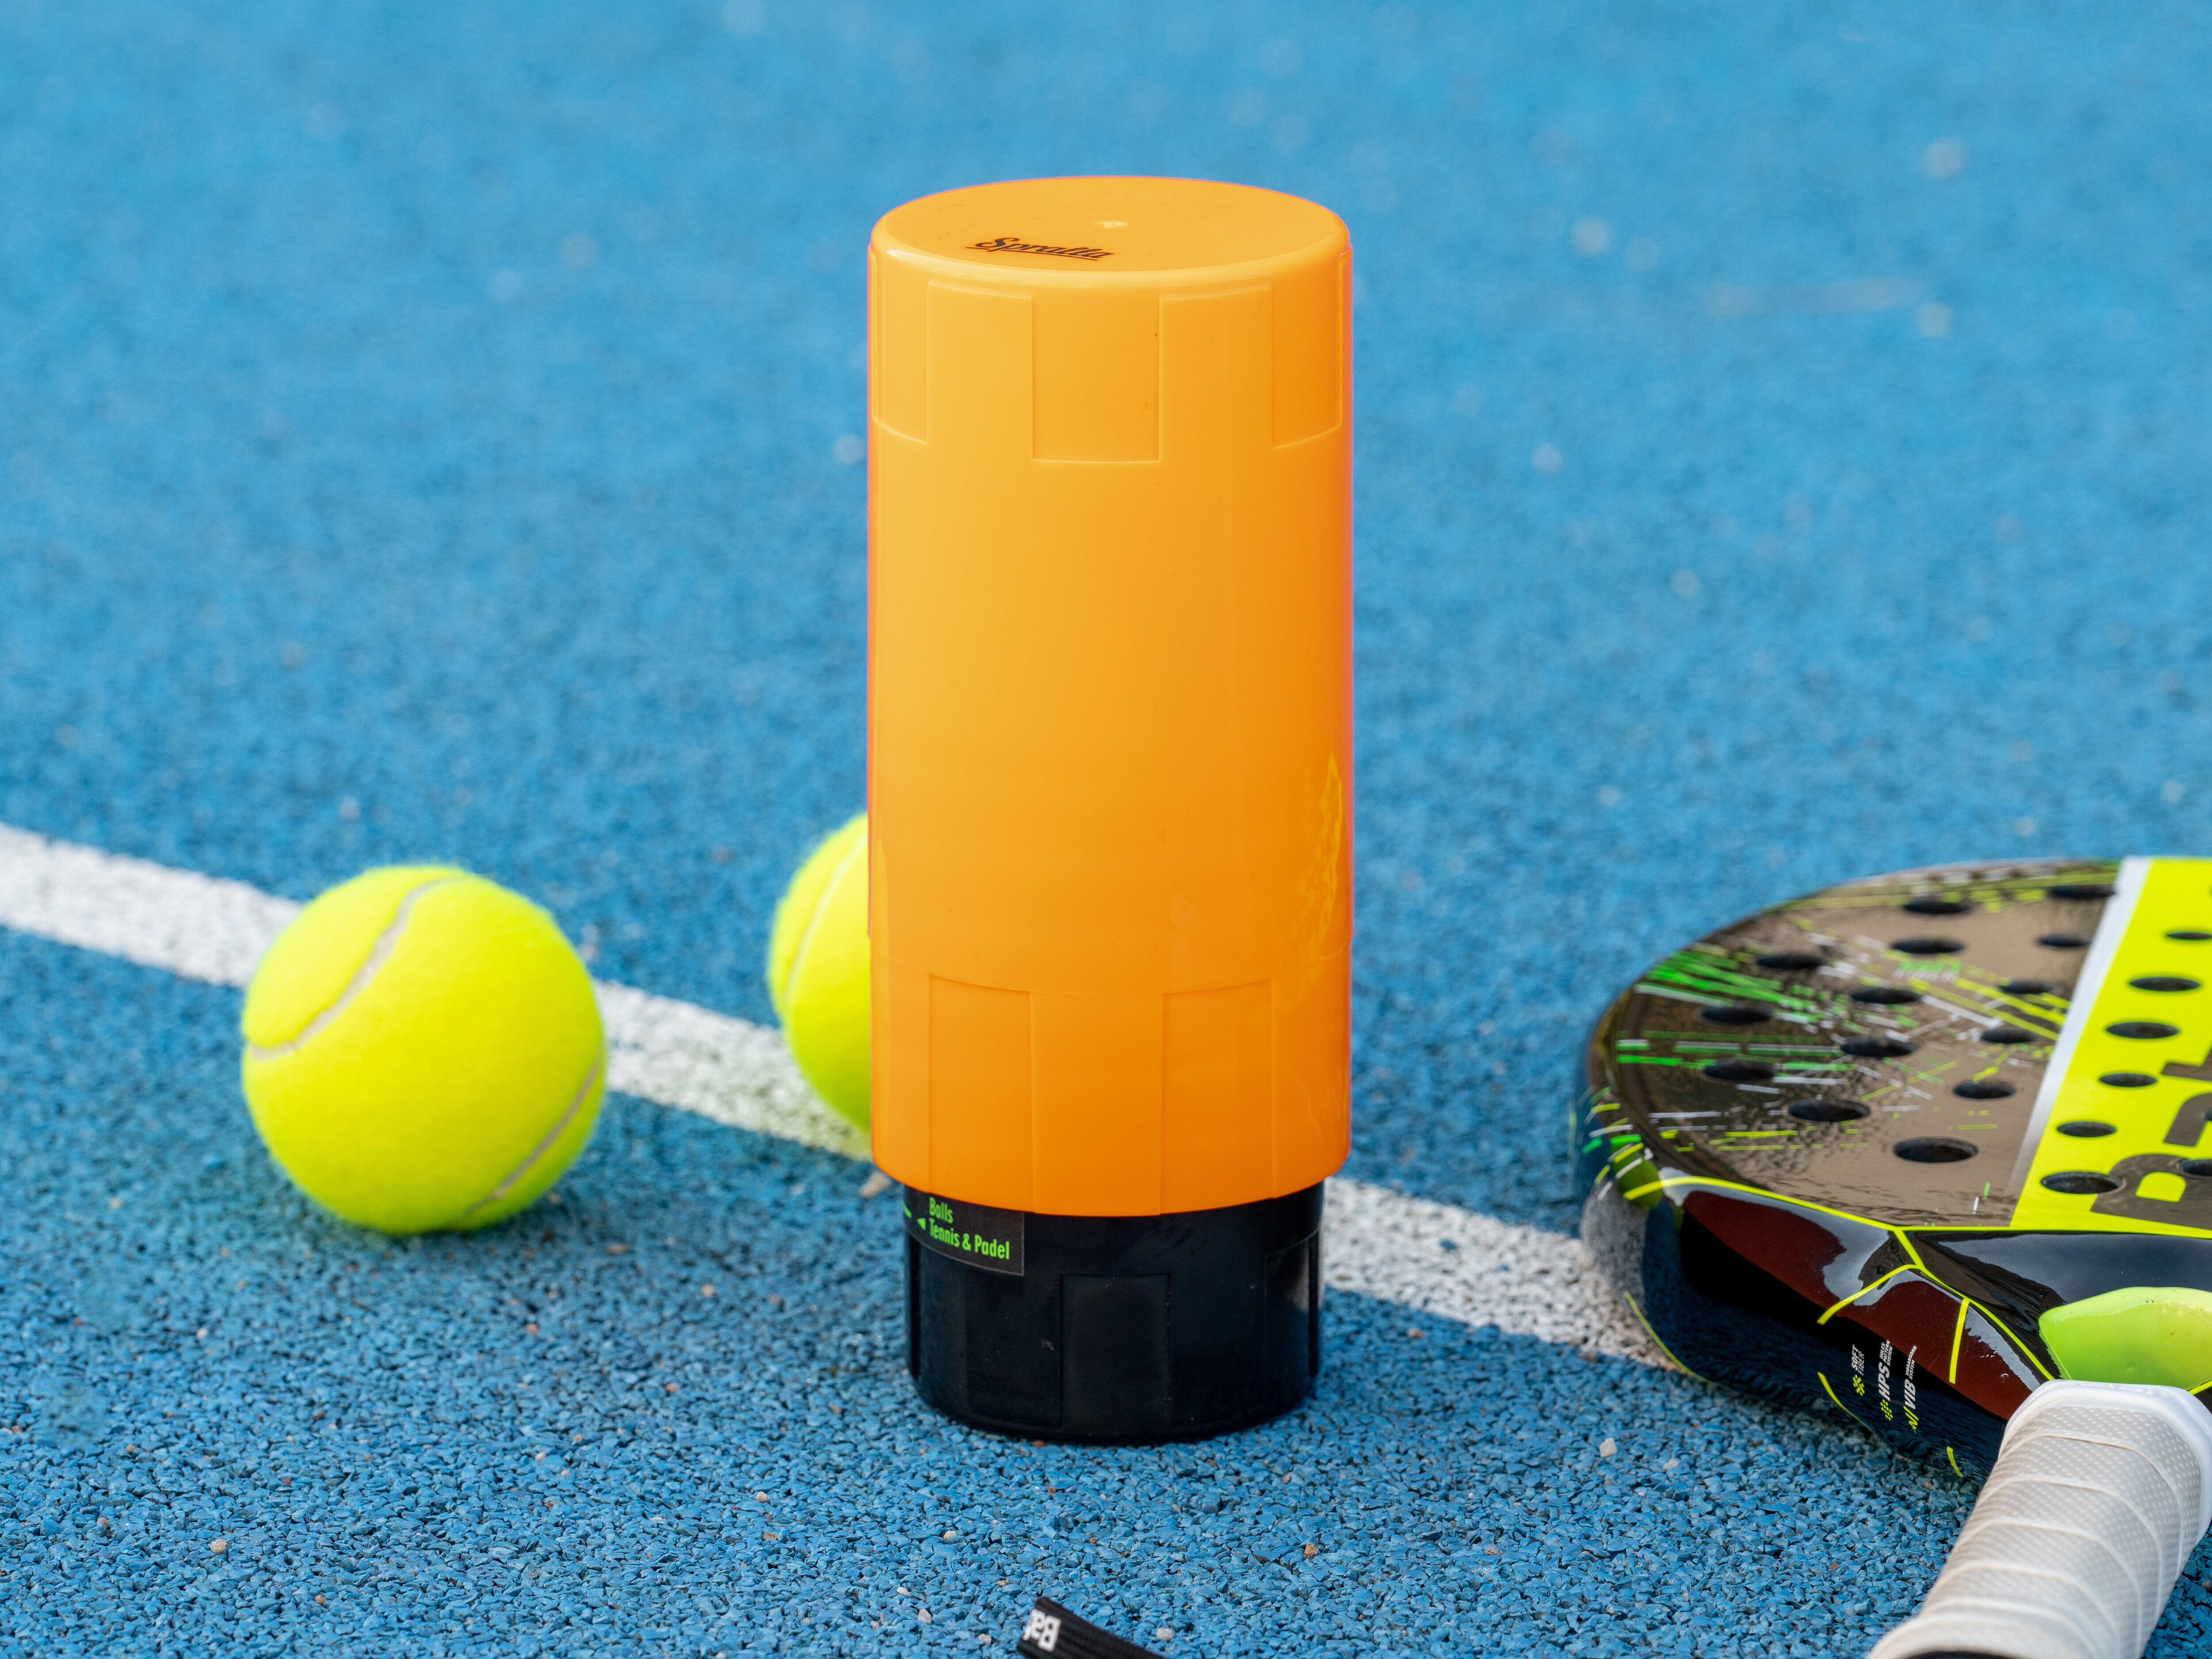 Tennisballbehälter Nachhaltiges Tennis Otaro ® Tennisbälle Druckbehälter für Nachhaltige Tennisball Benutzung Tennis Zubehör zum Vermeiden von Abfalls und Schonung des Geldbeutels 